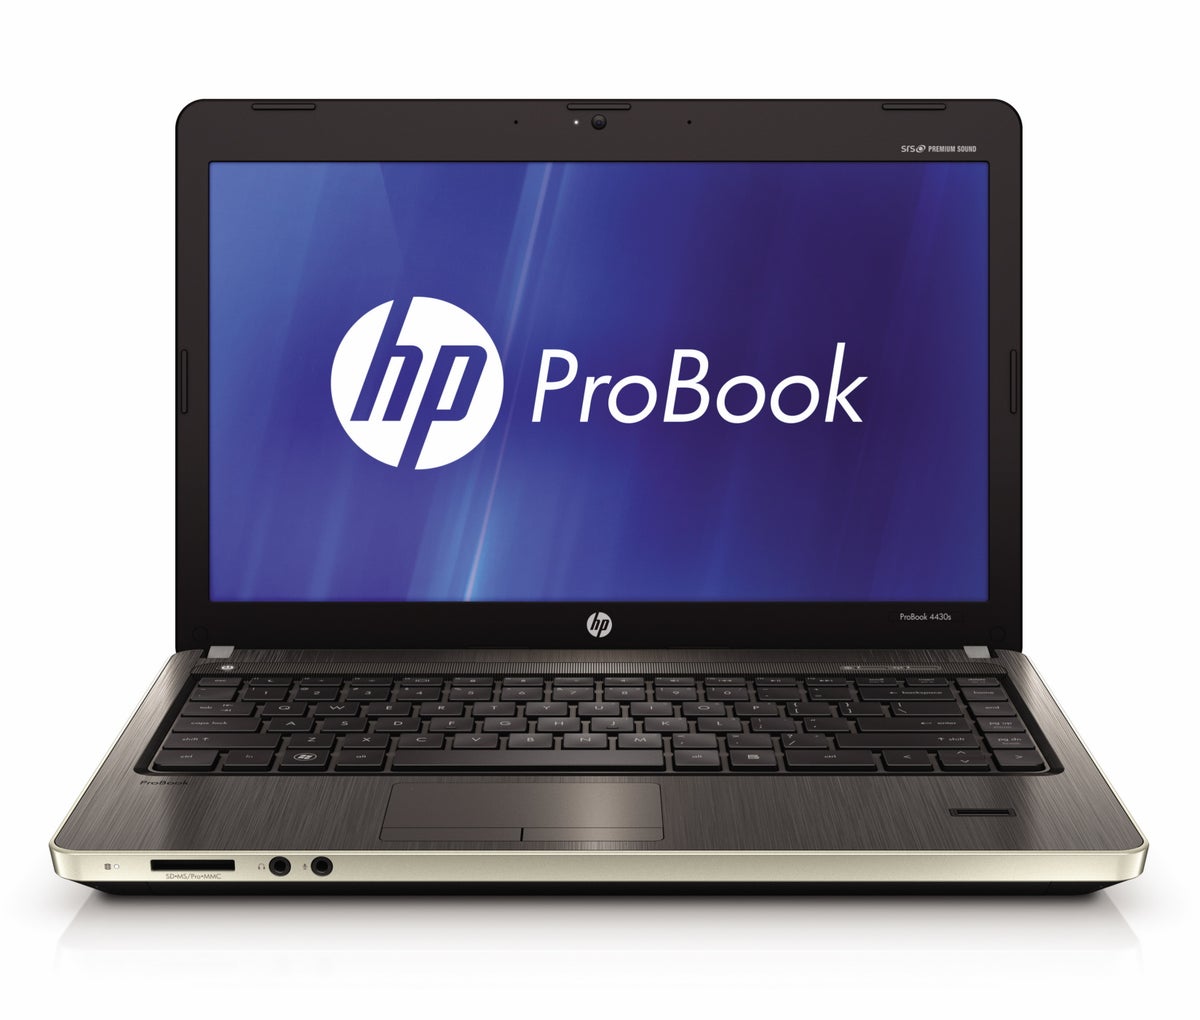 HP_ProBook_s-series_front_metallic_gray.JPG